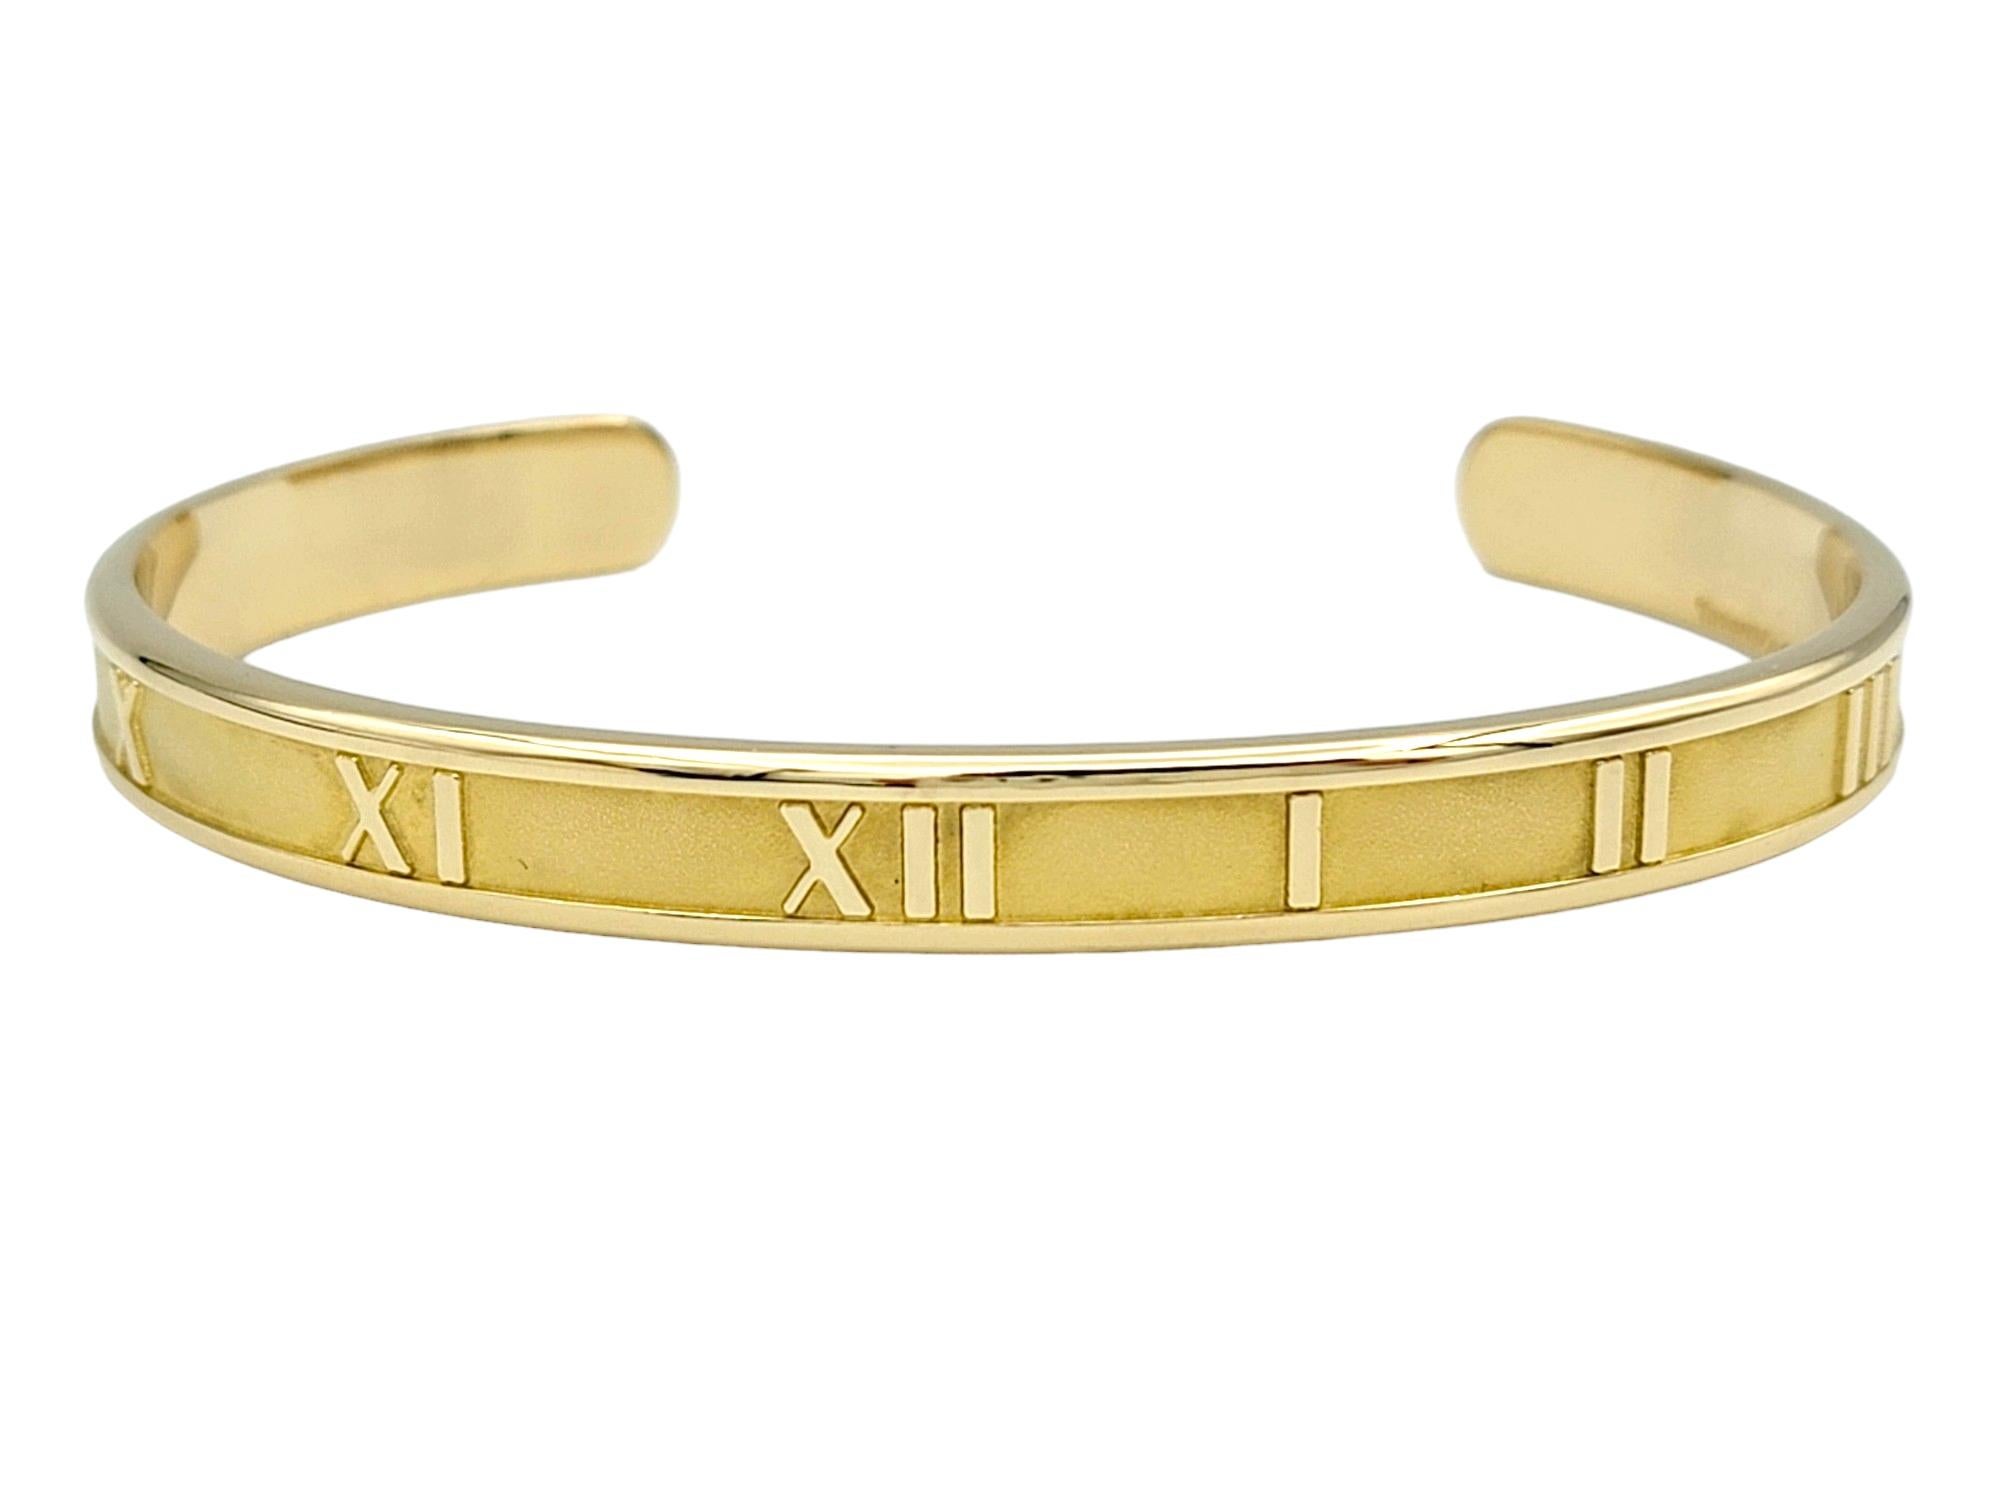 Cette magnifique pièce de Tiffany & Co. Le bracelet manchette Atlas en or jaune 18 carats est un bijou intemporel et élégant qui respire la sophistication et le luxe. Le design épuré et minimaliste du bracelet manchette met en valeur le motif